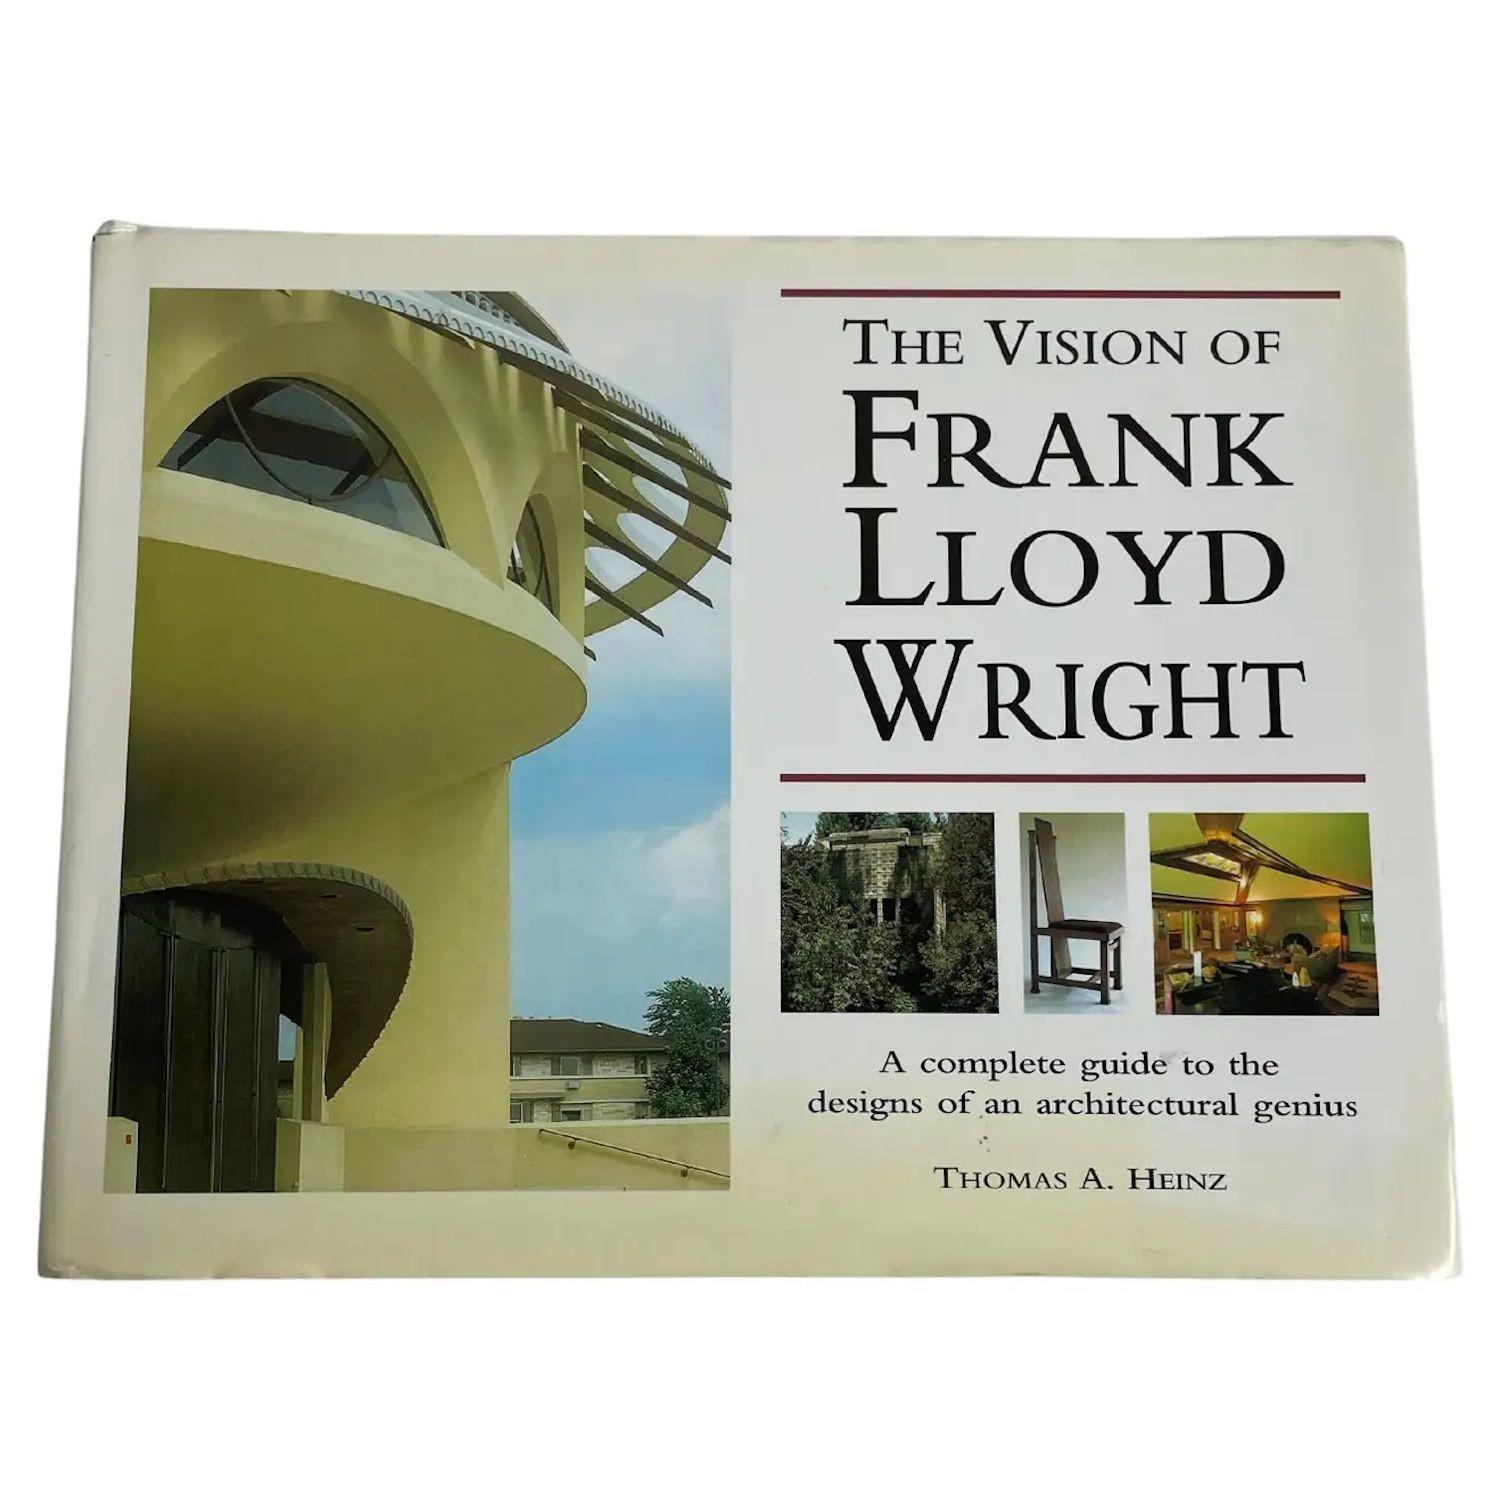 The Vision of Frank Lloyd Wright. par Thomas A. Franks grand livre à couverture rigide. Un guide complet des designs d'un génie de l'architecture. La carrière de Frank Lloyd Wright, tantôt tragique, tantôt tumultueuse, mais toujours créative, a été